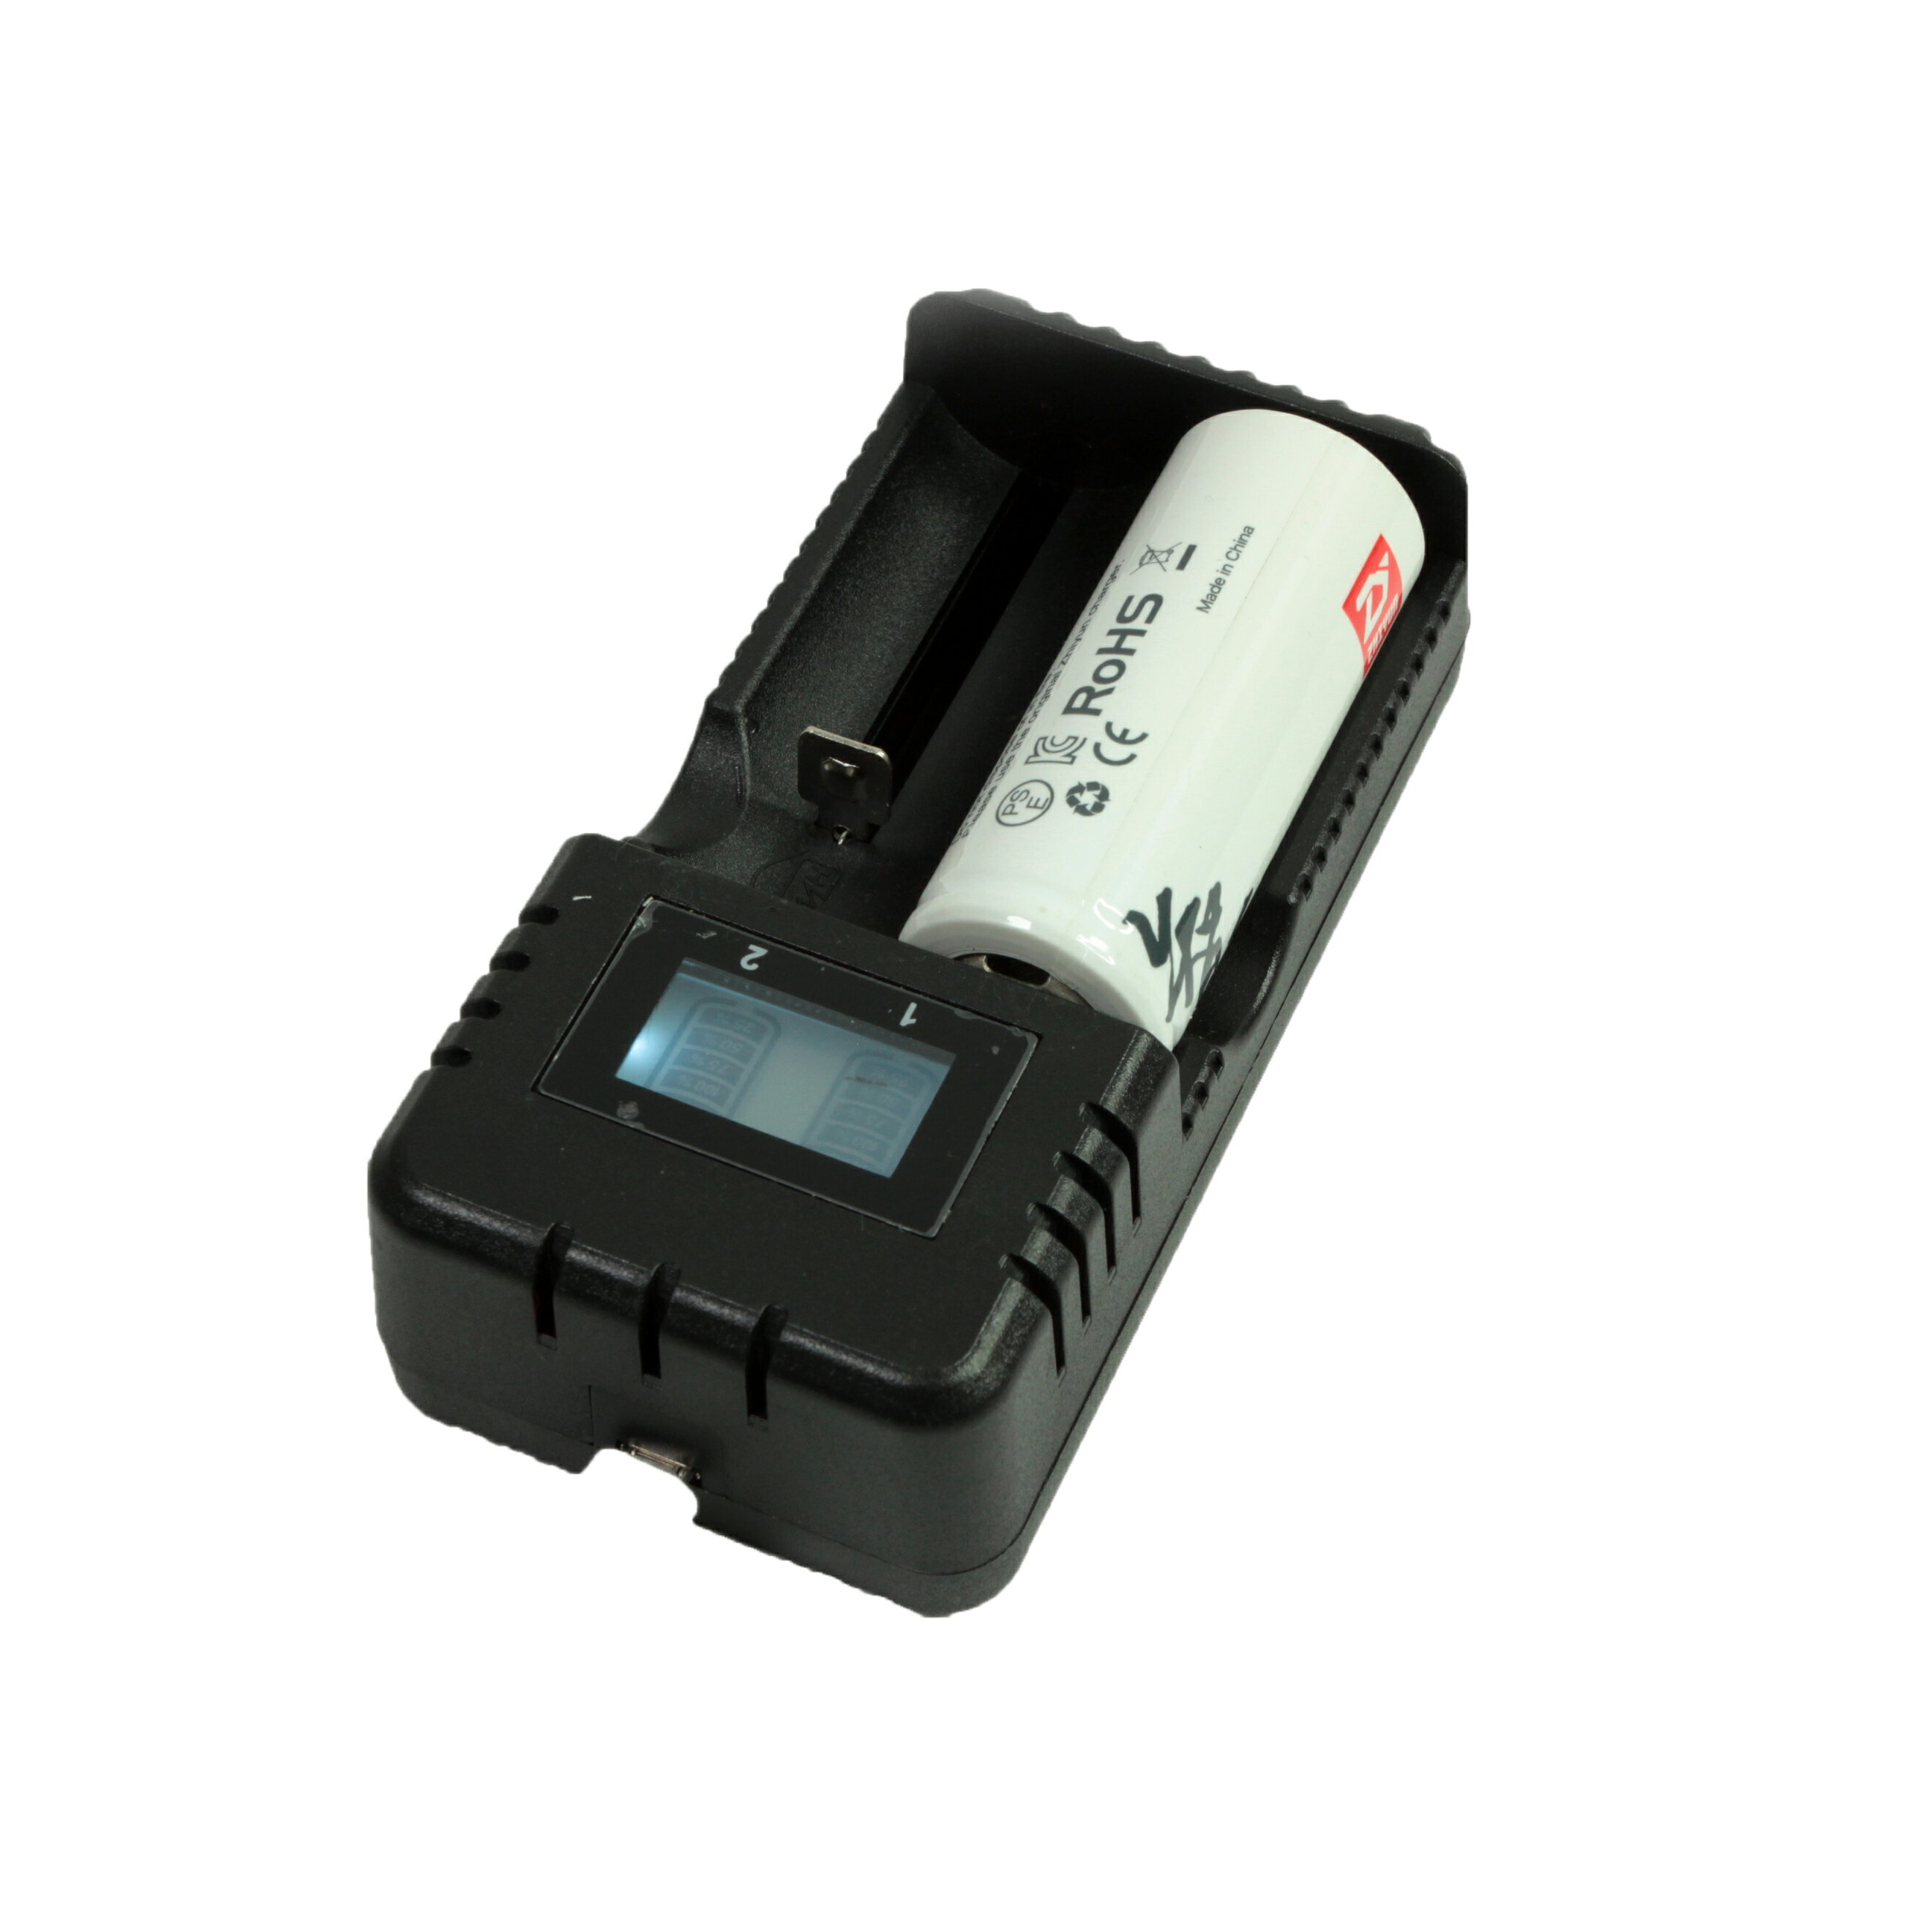 液晶型 電池 充電器 (公司貨) USB式 LCD螢幕顯示電池容量 正負極性保護 防過載、過熱、短路現象